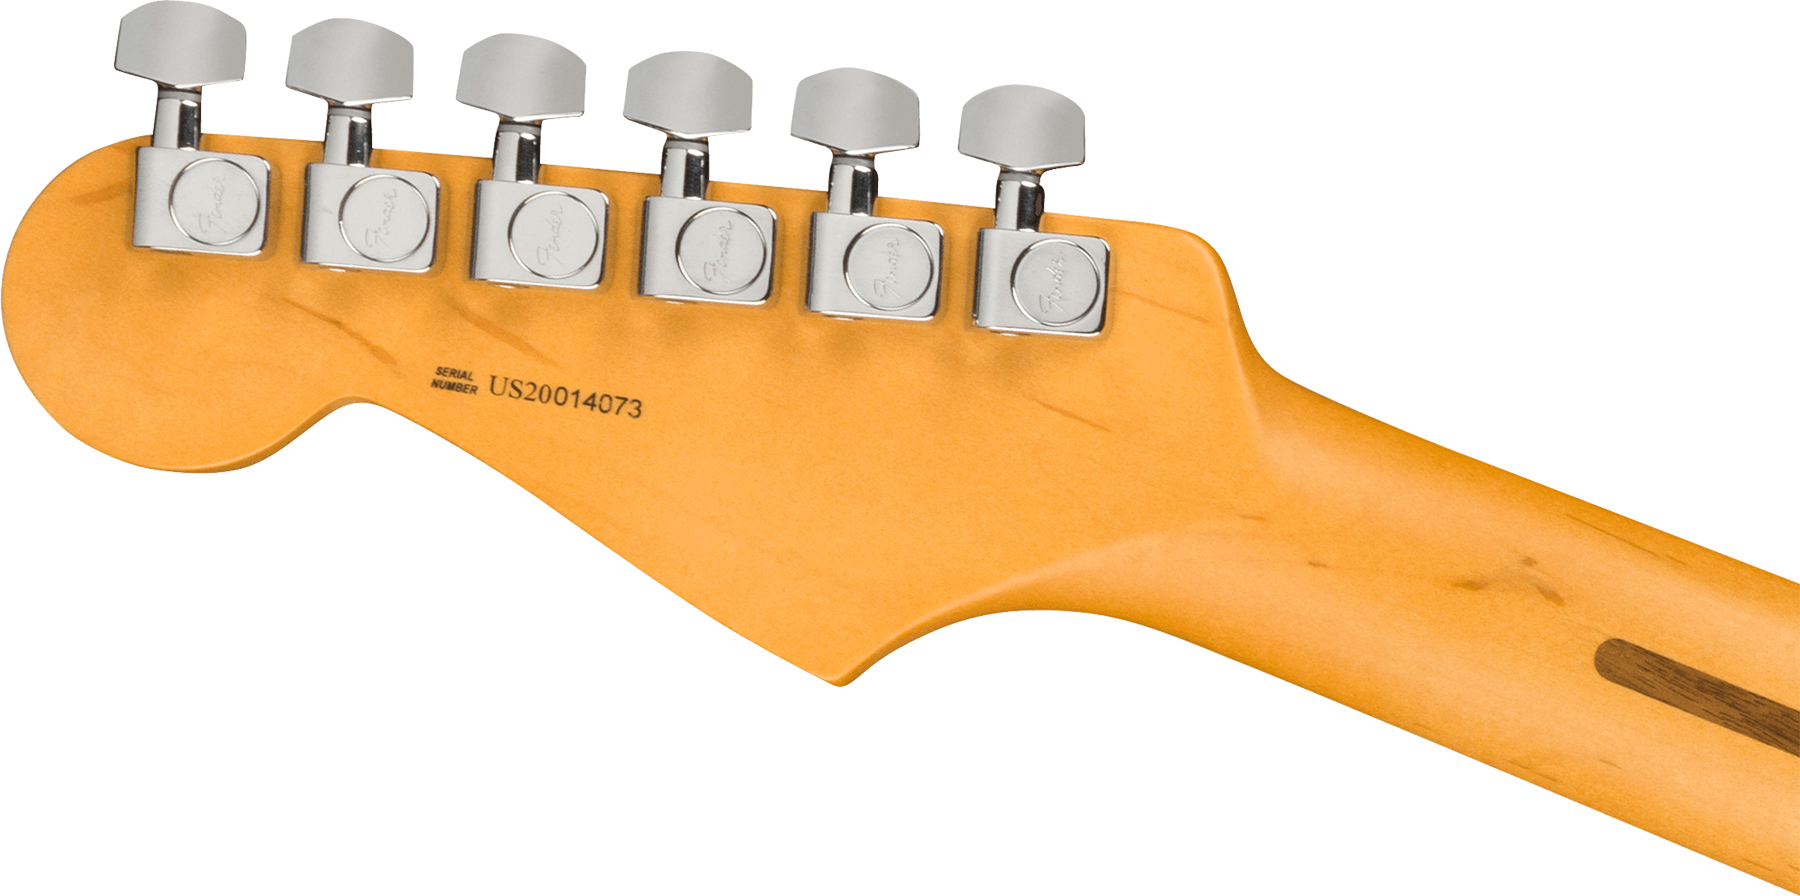 Fender Strat American Professional Ii Lh Gaucher Usa Mn - Mystic Surf Green - Linkshandige elektrische gitaar - Variation 2